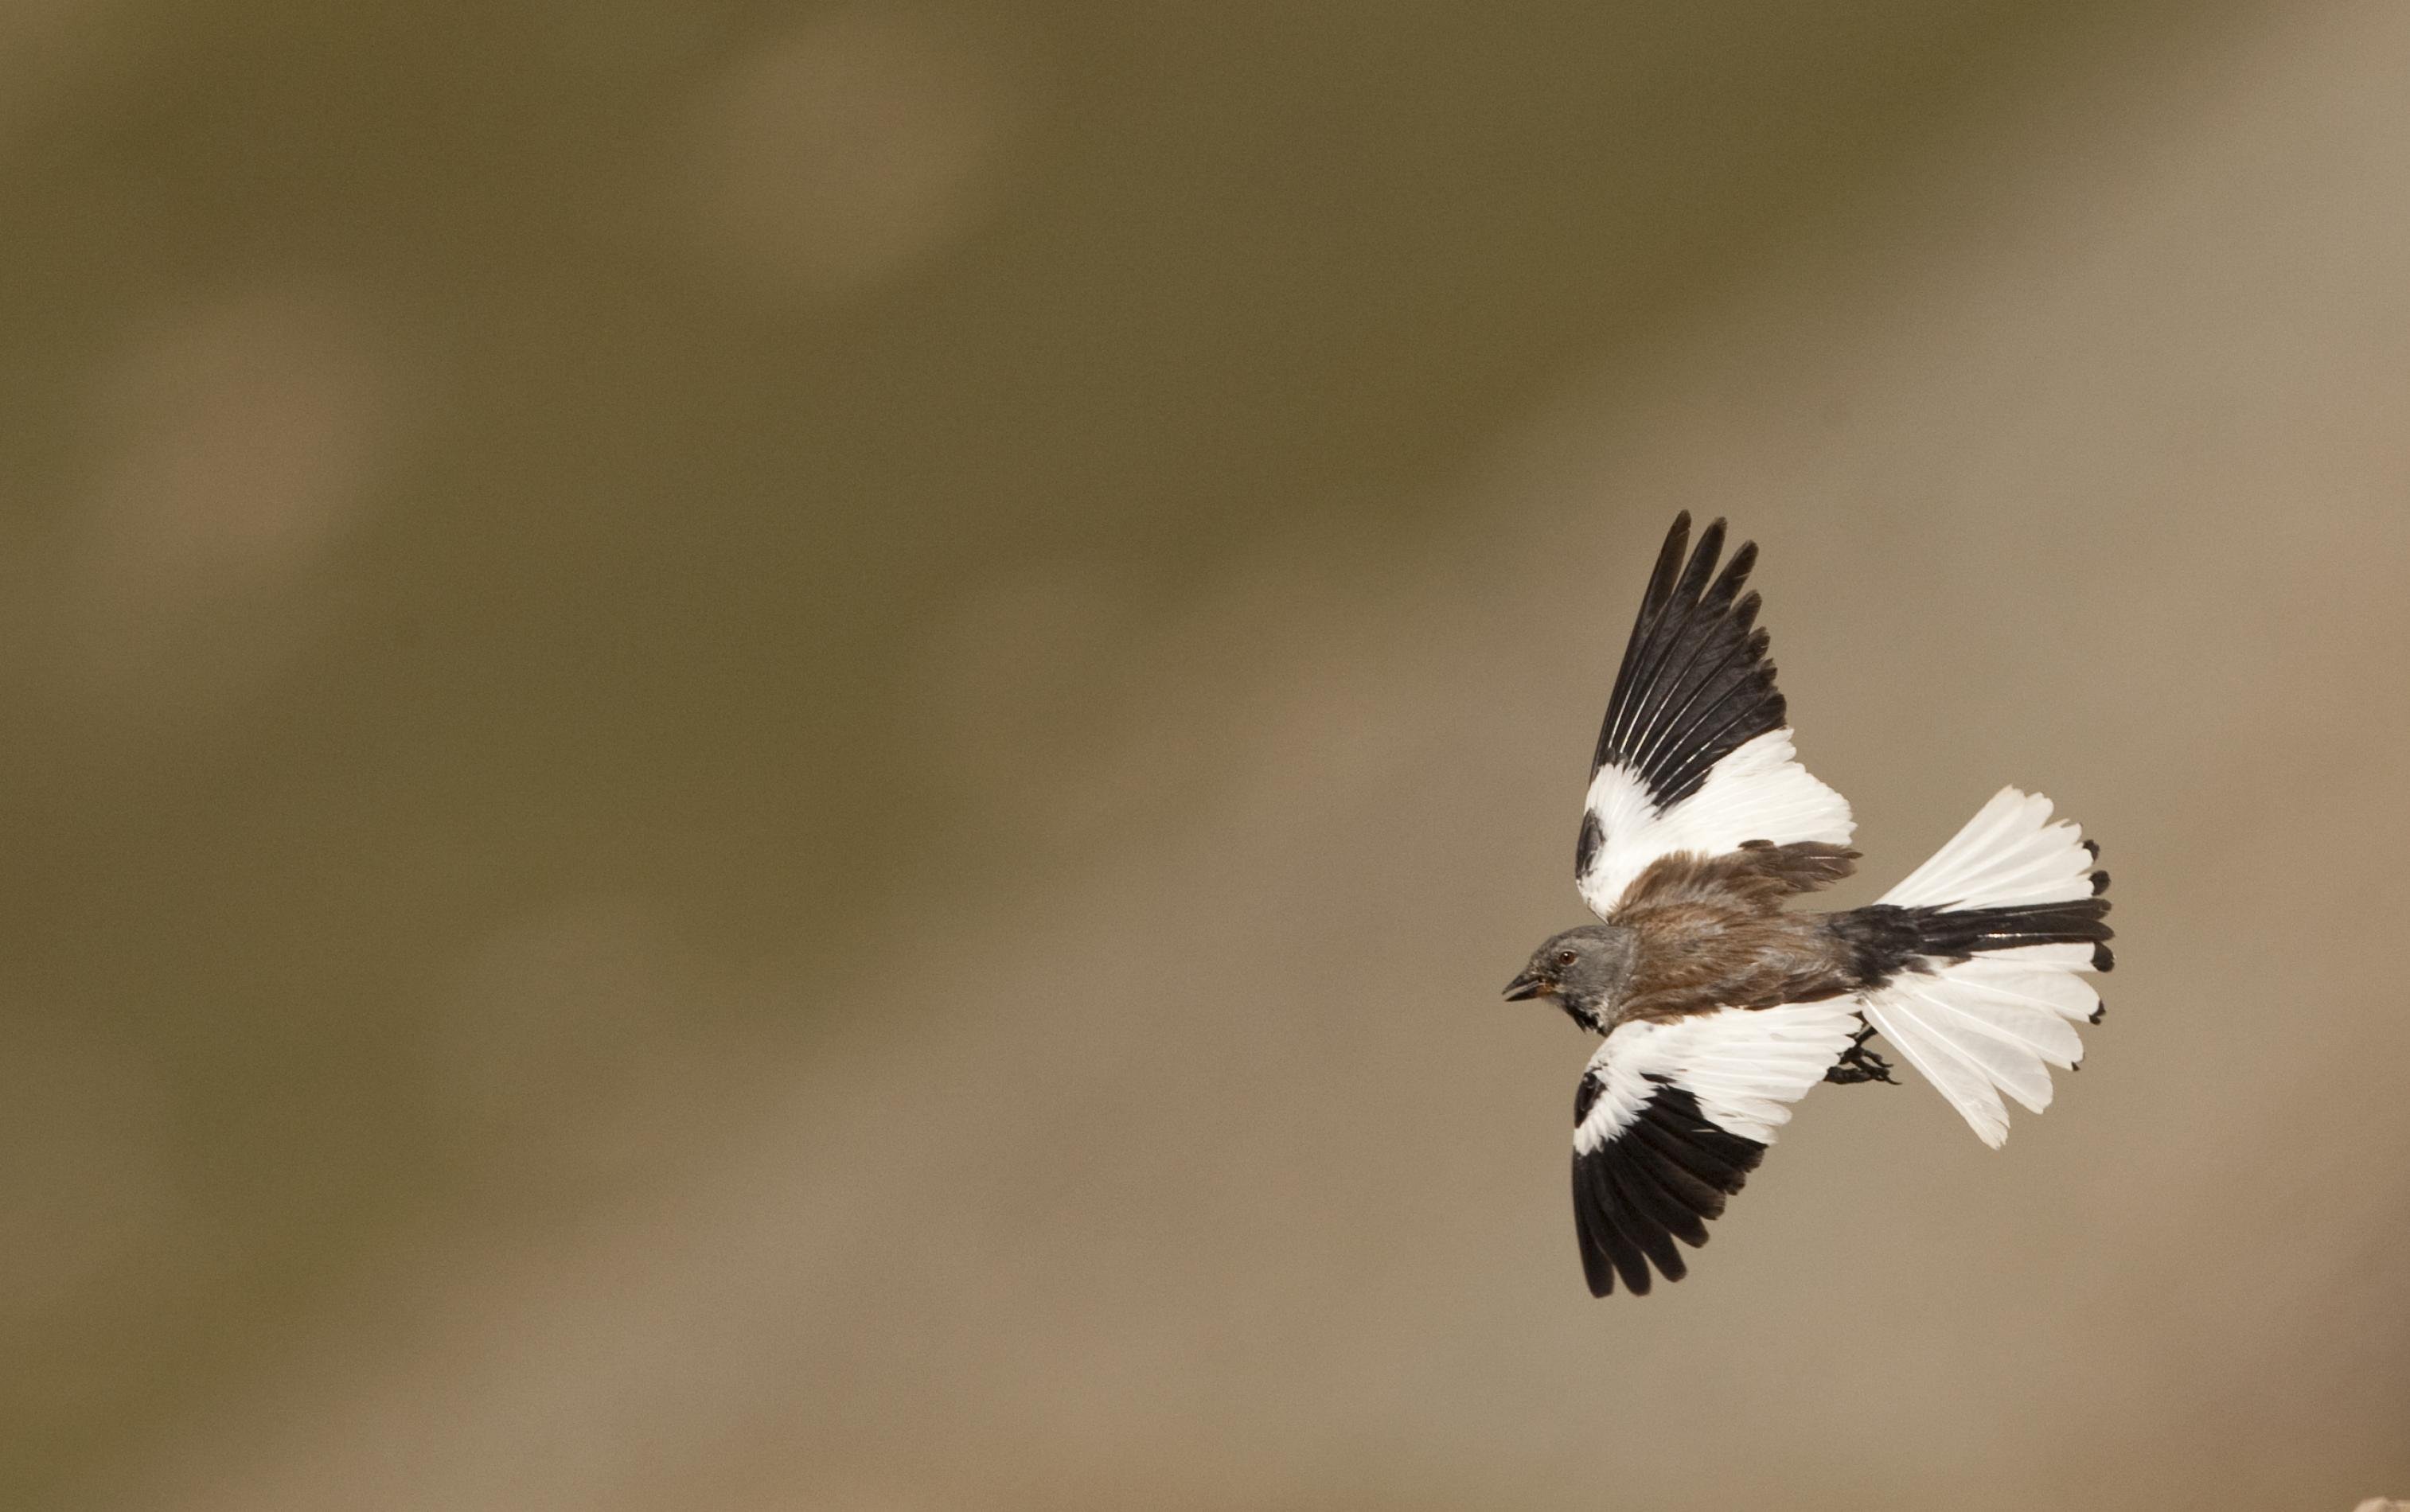 Spatzenartiger Vogel mit ausgebreiteten schwarz-weißen Flügeln im Gleitflug.